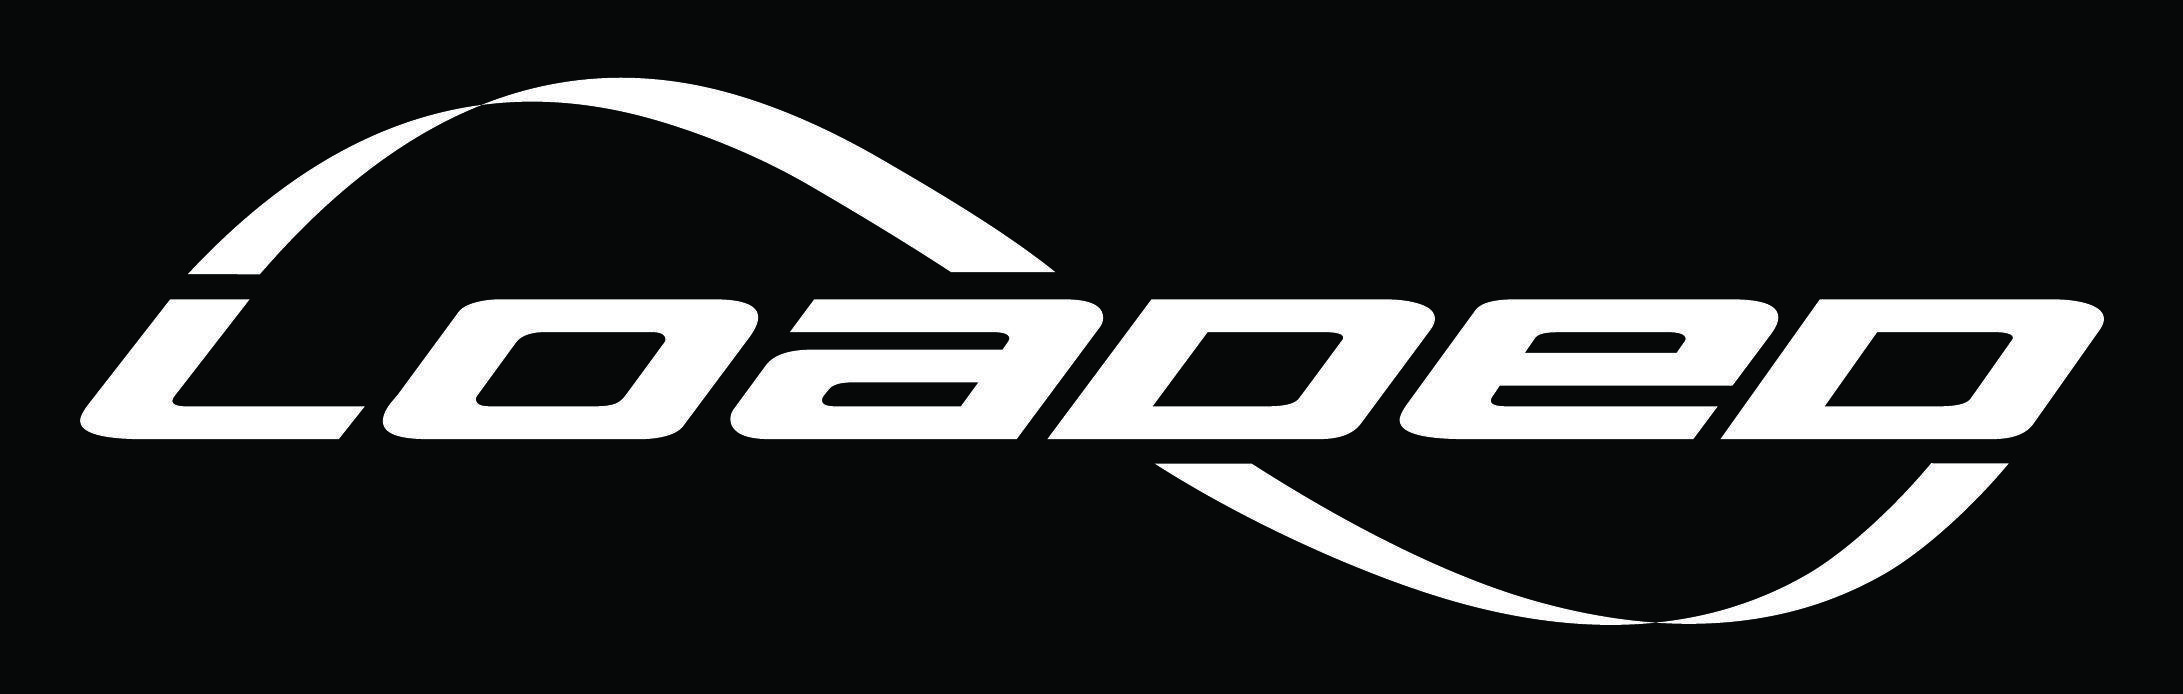 Loaded Logo - Loaded Boards, Inc.